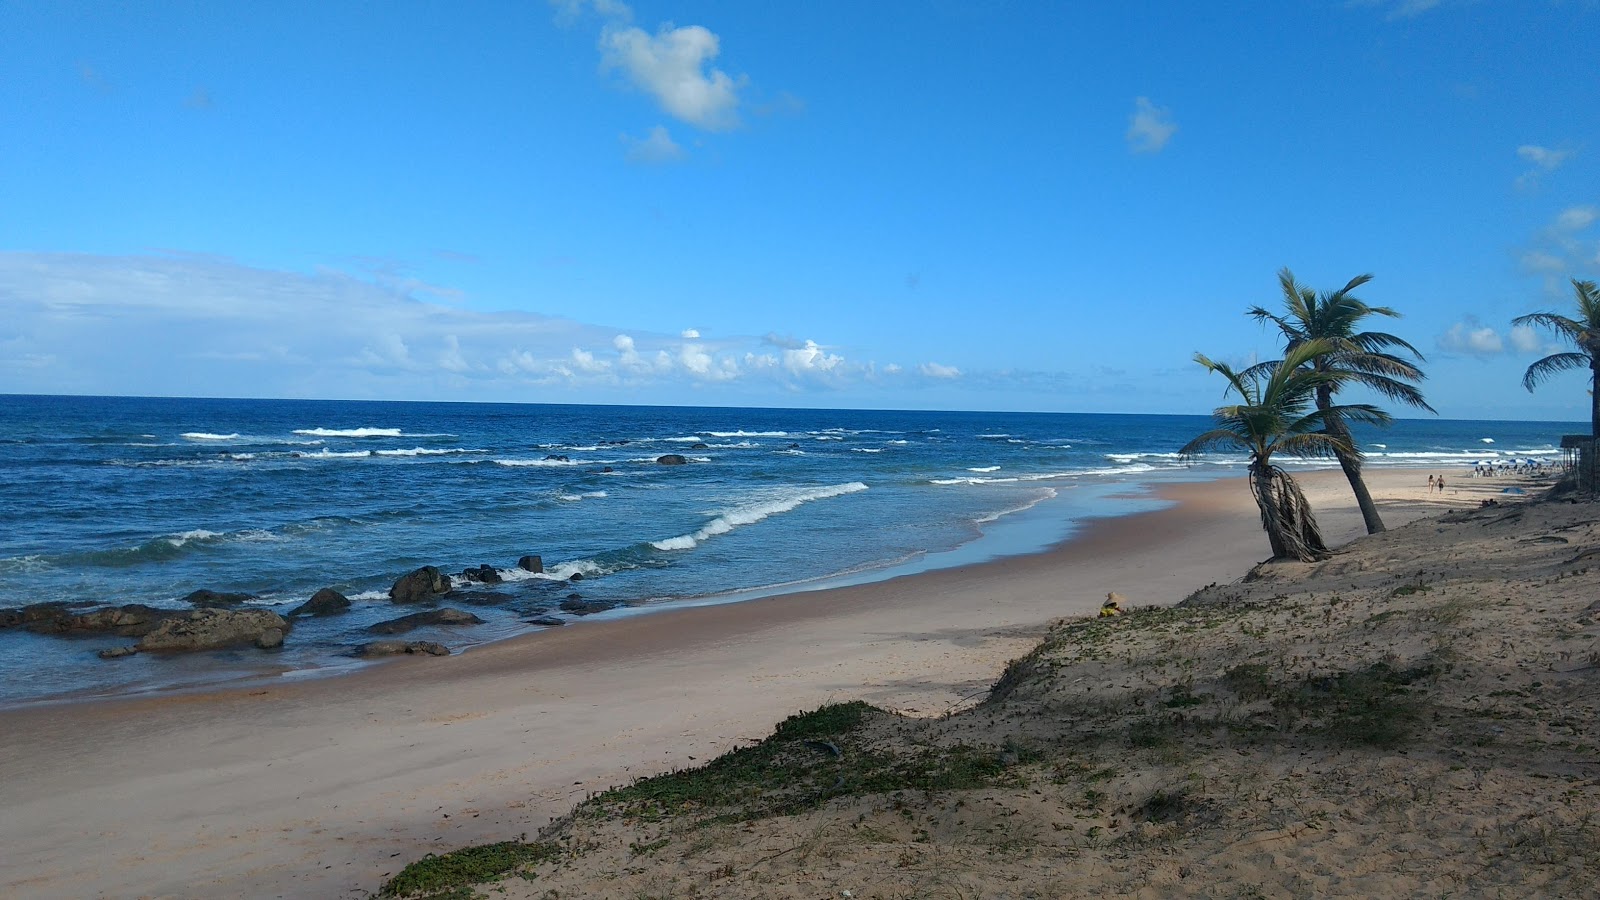 Foto af Praia de Santo Antonio - populært sted blandt afslapningskendere